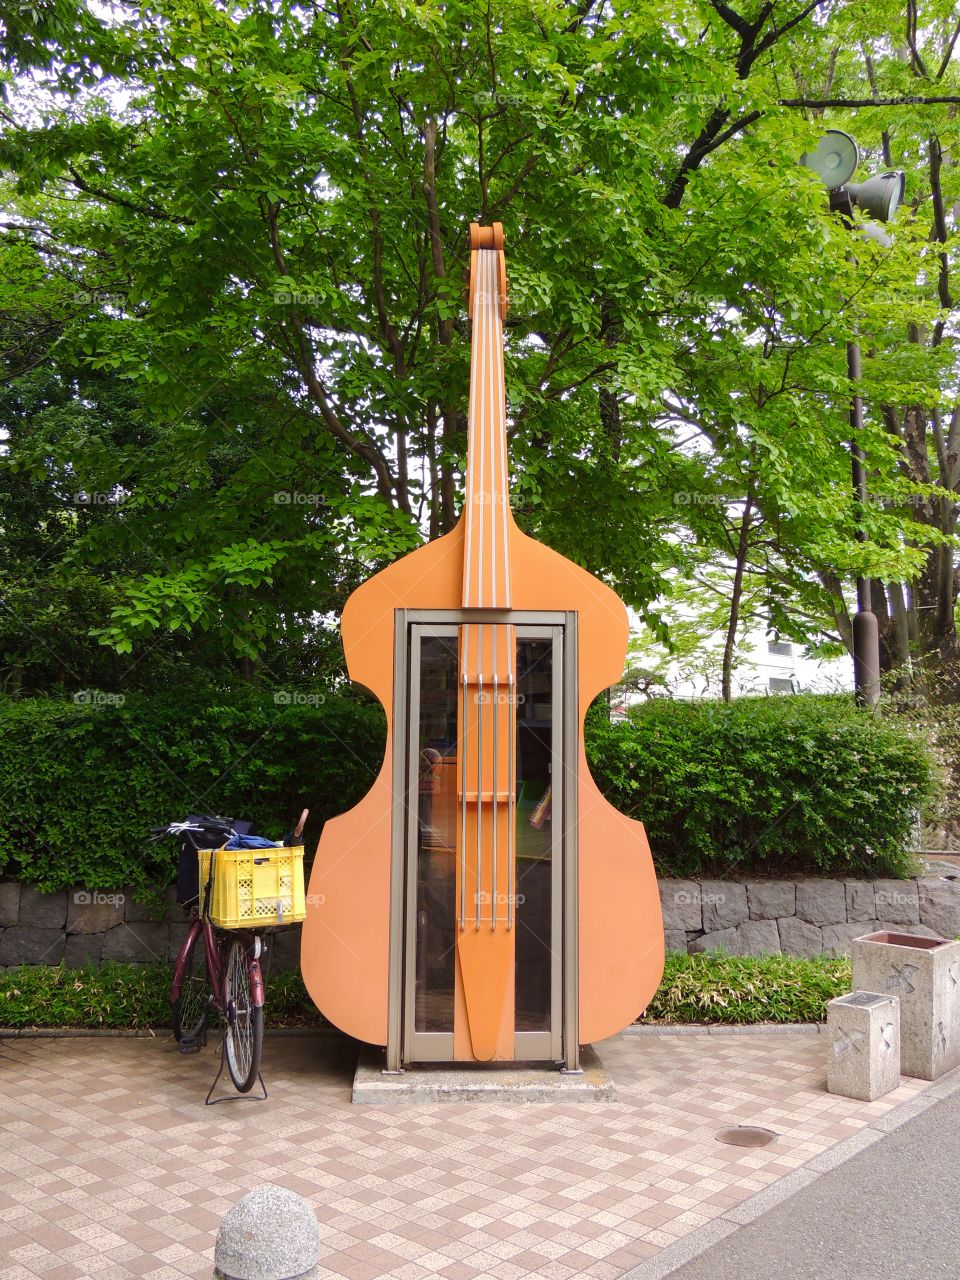 Telephone booth shaped violin. Cabina telefónica en forma de violín.